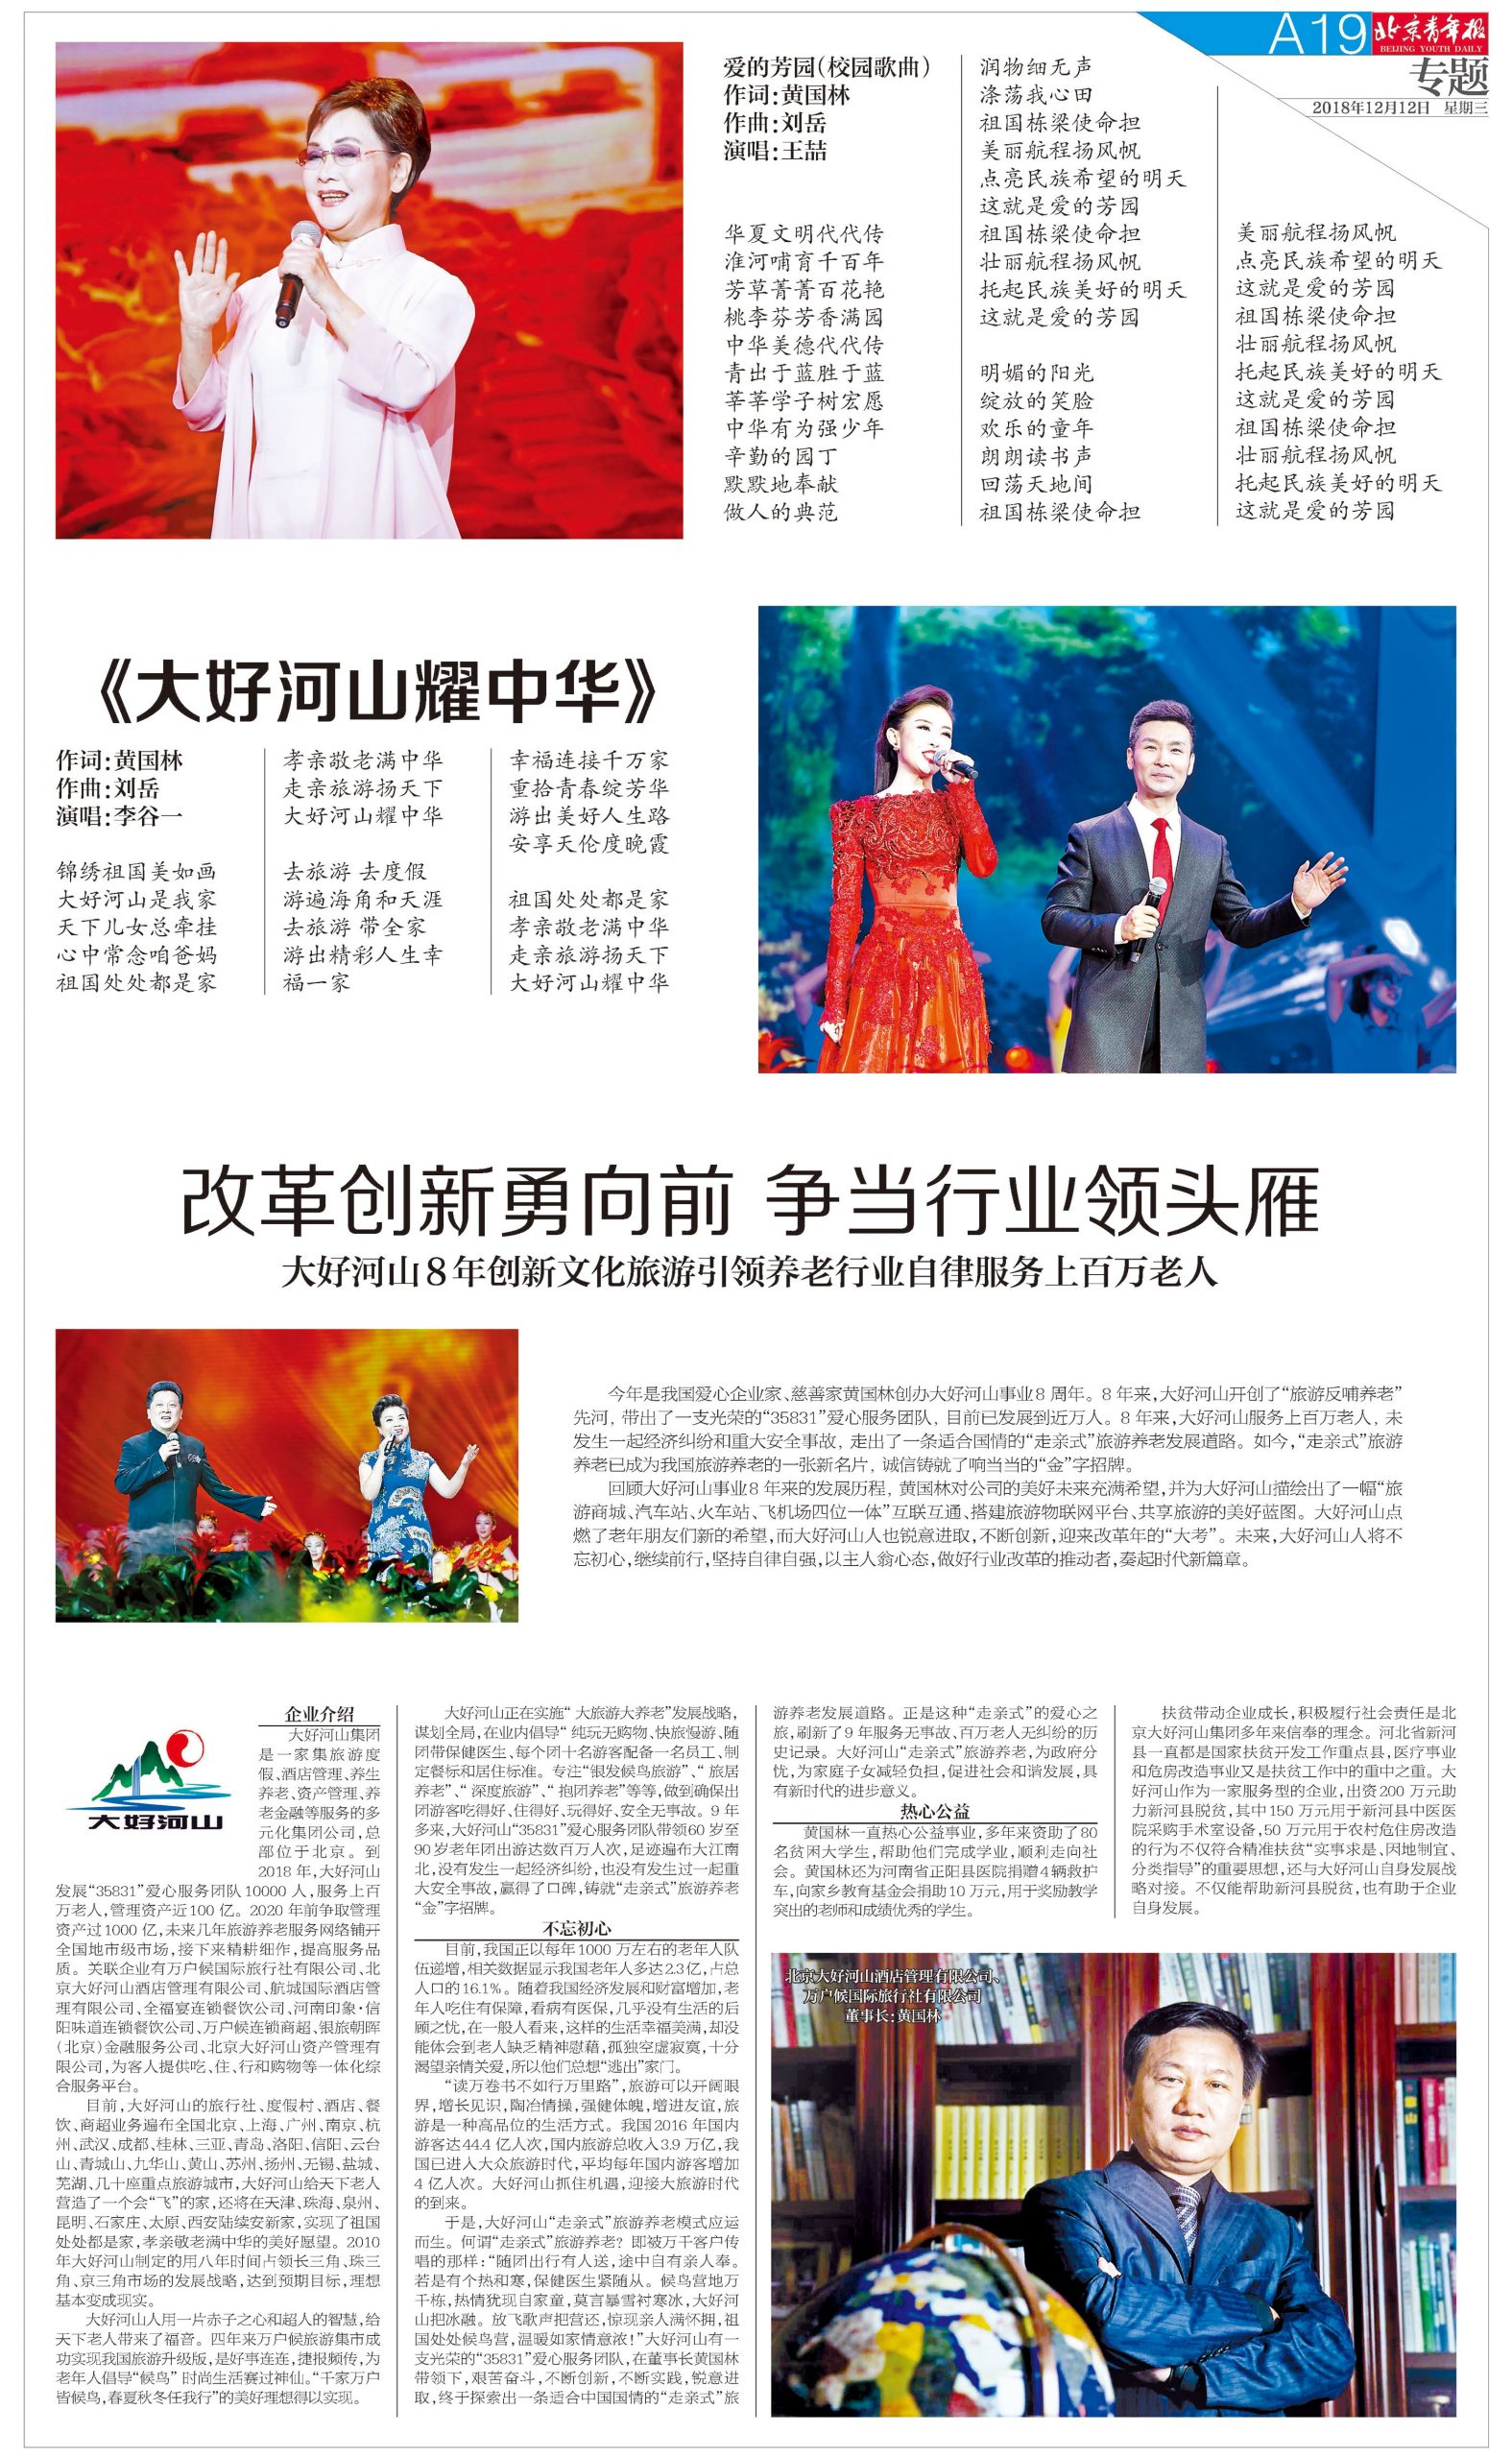 北京青年报 2018-12-12 A19